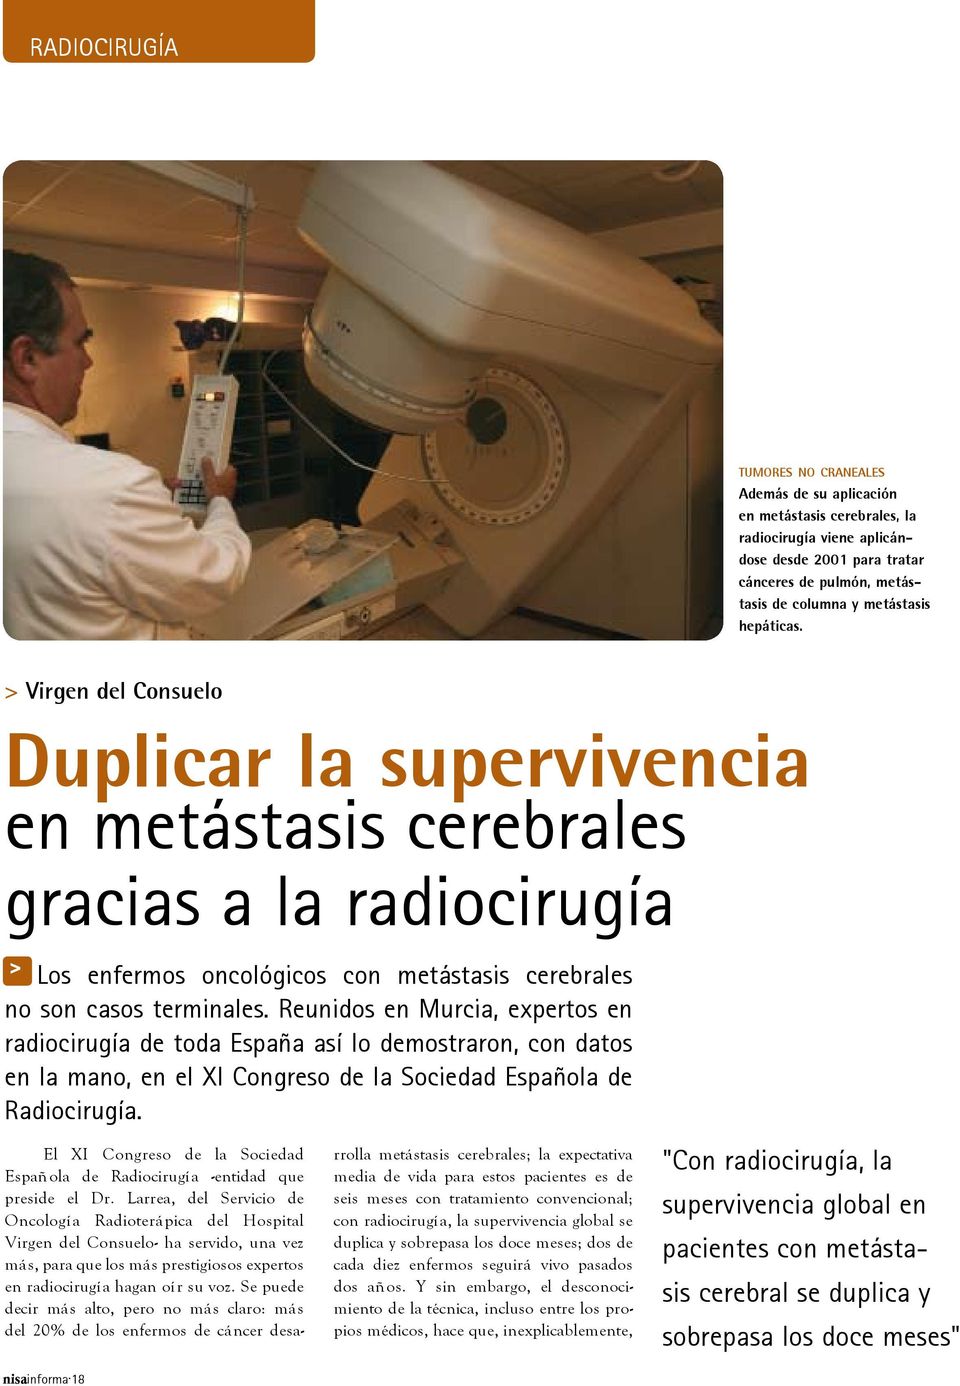 Reunidos en Murcia, expertos en radiocirugía de toda España así lo demostraron, con datos en la mano, en el XI Congreso de la Sociedad Española de Radiocirugía.